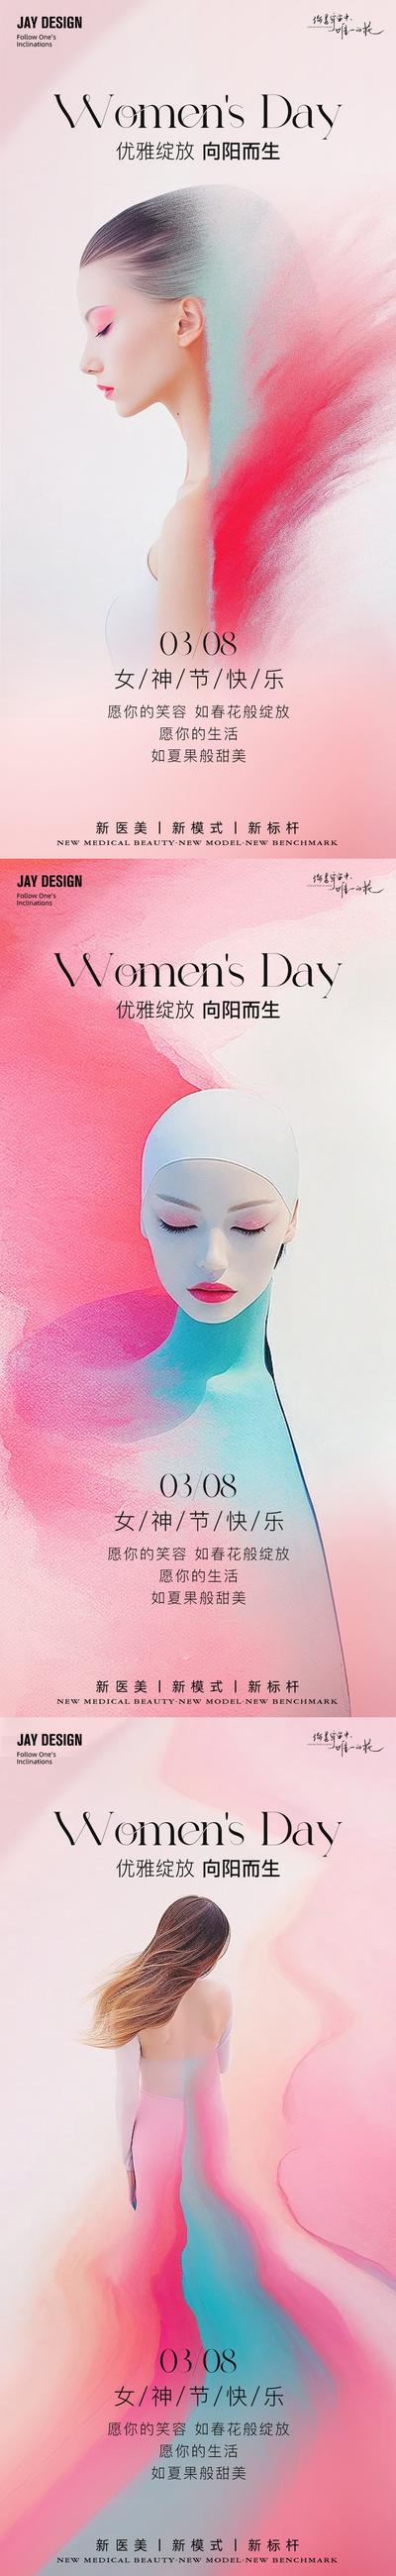 南门网 广告 海报 地产 妇女节 医美 人物 系列 公历节日 38 系列 女神节 粉色 高级